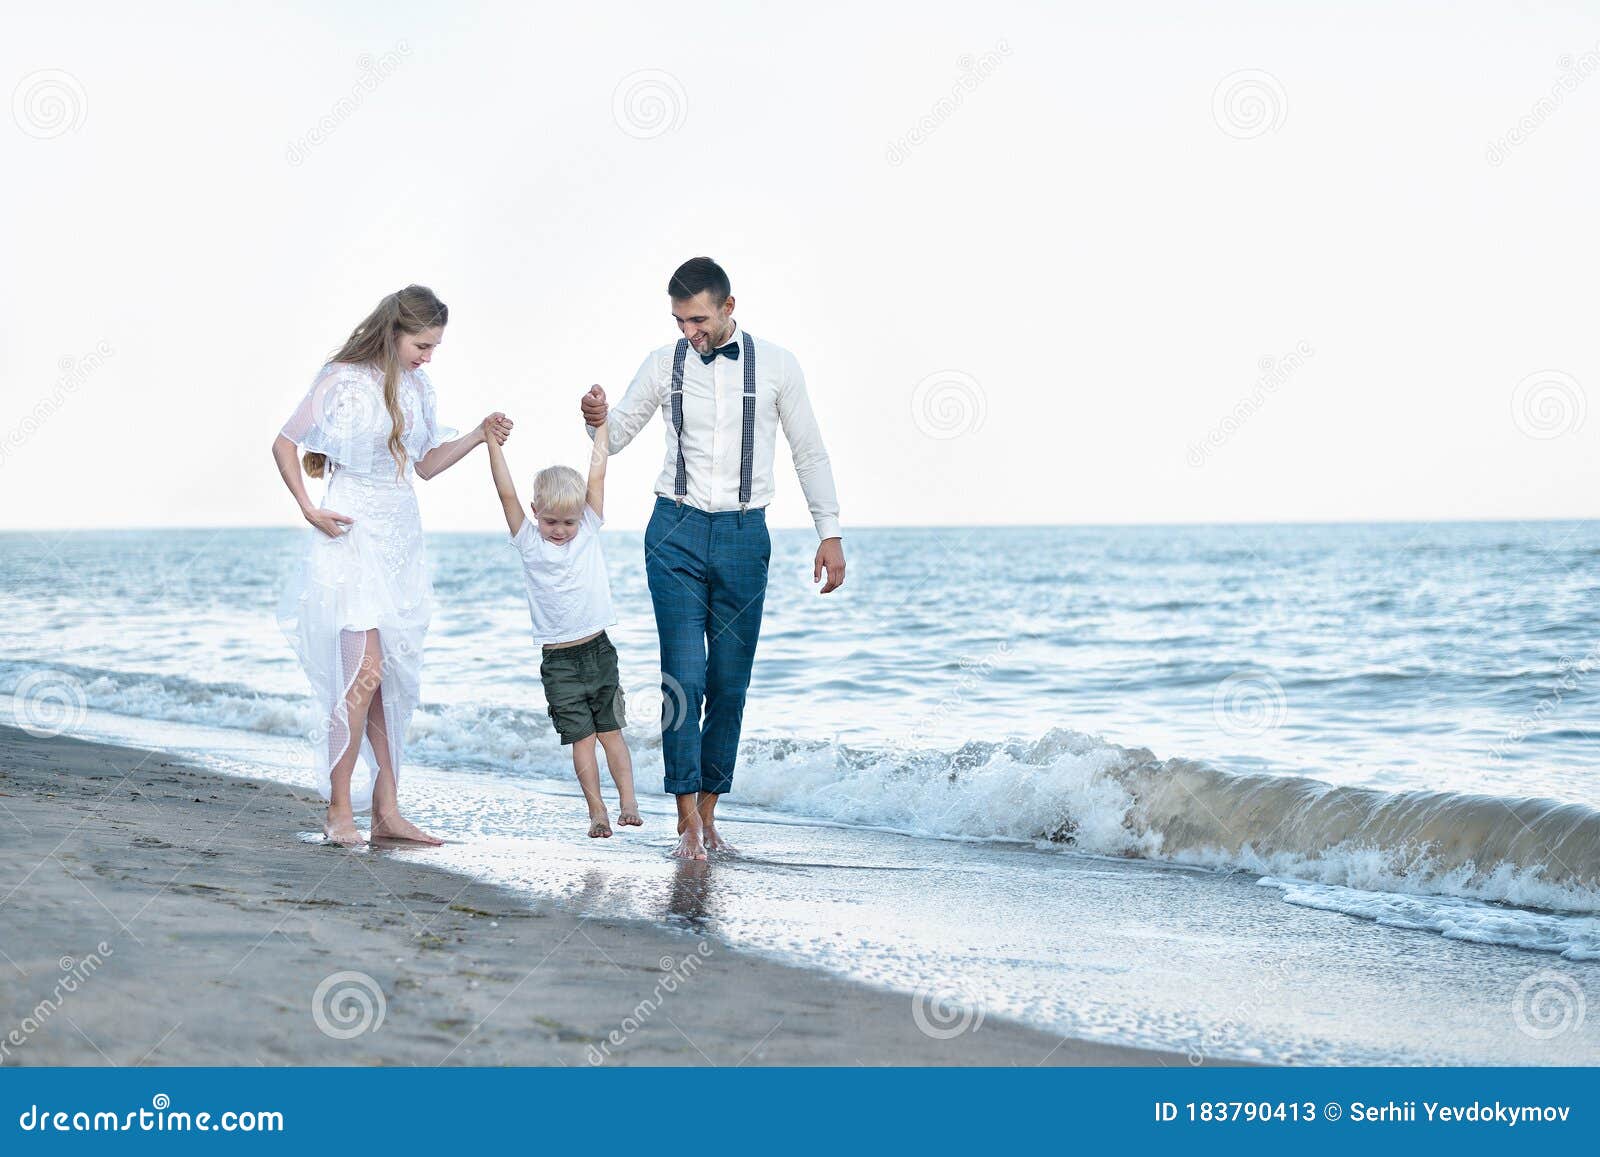 Мама на курорте рассказ. Мать, отец и сын на отдыхе у моря. С сыном отдыхаем. Мама на курорте картинки. Папа поднял на руки дочку на пляже.